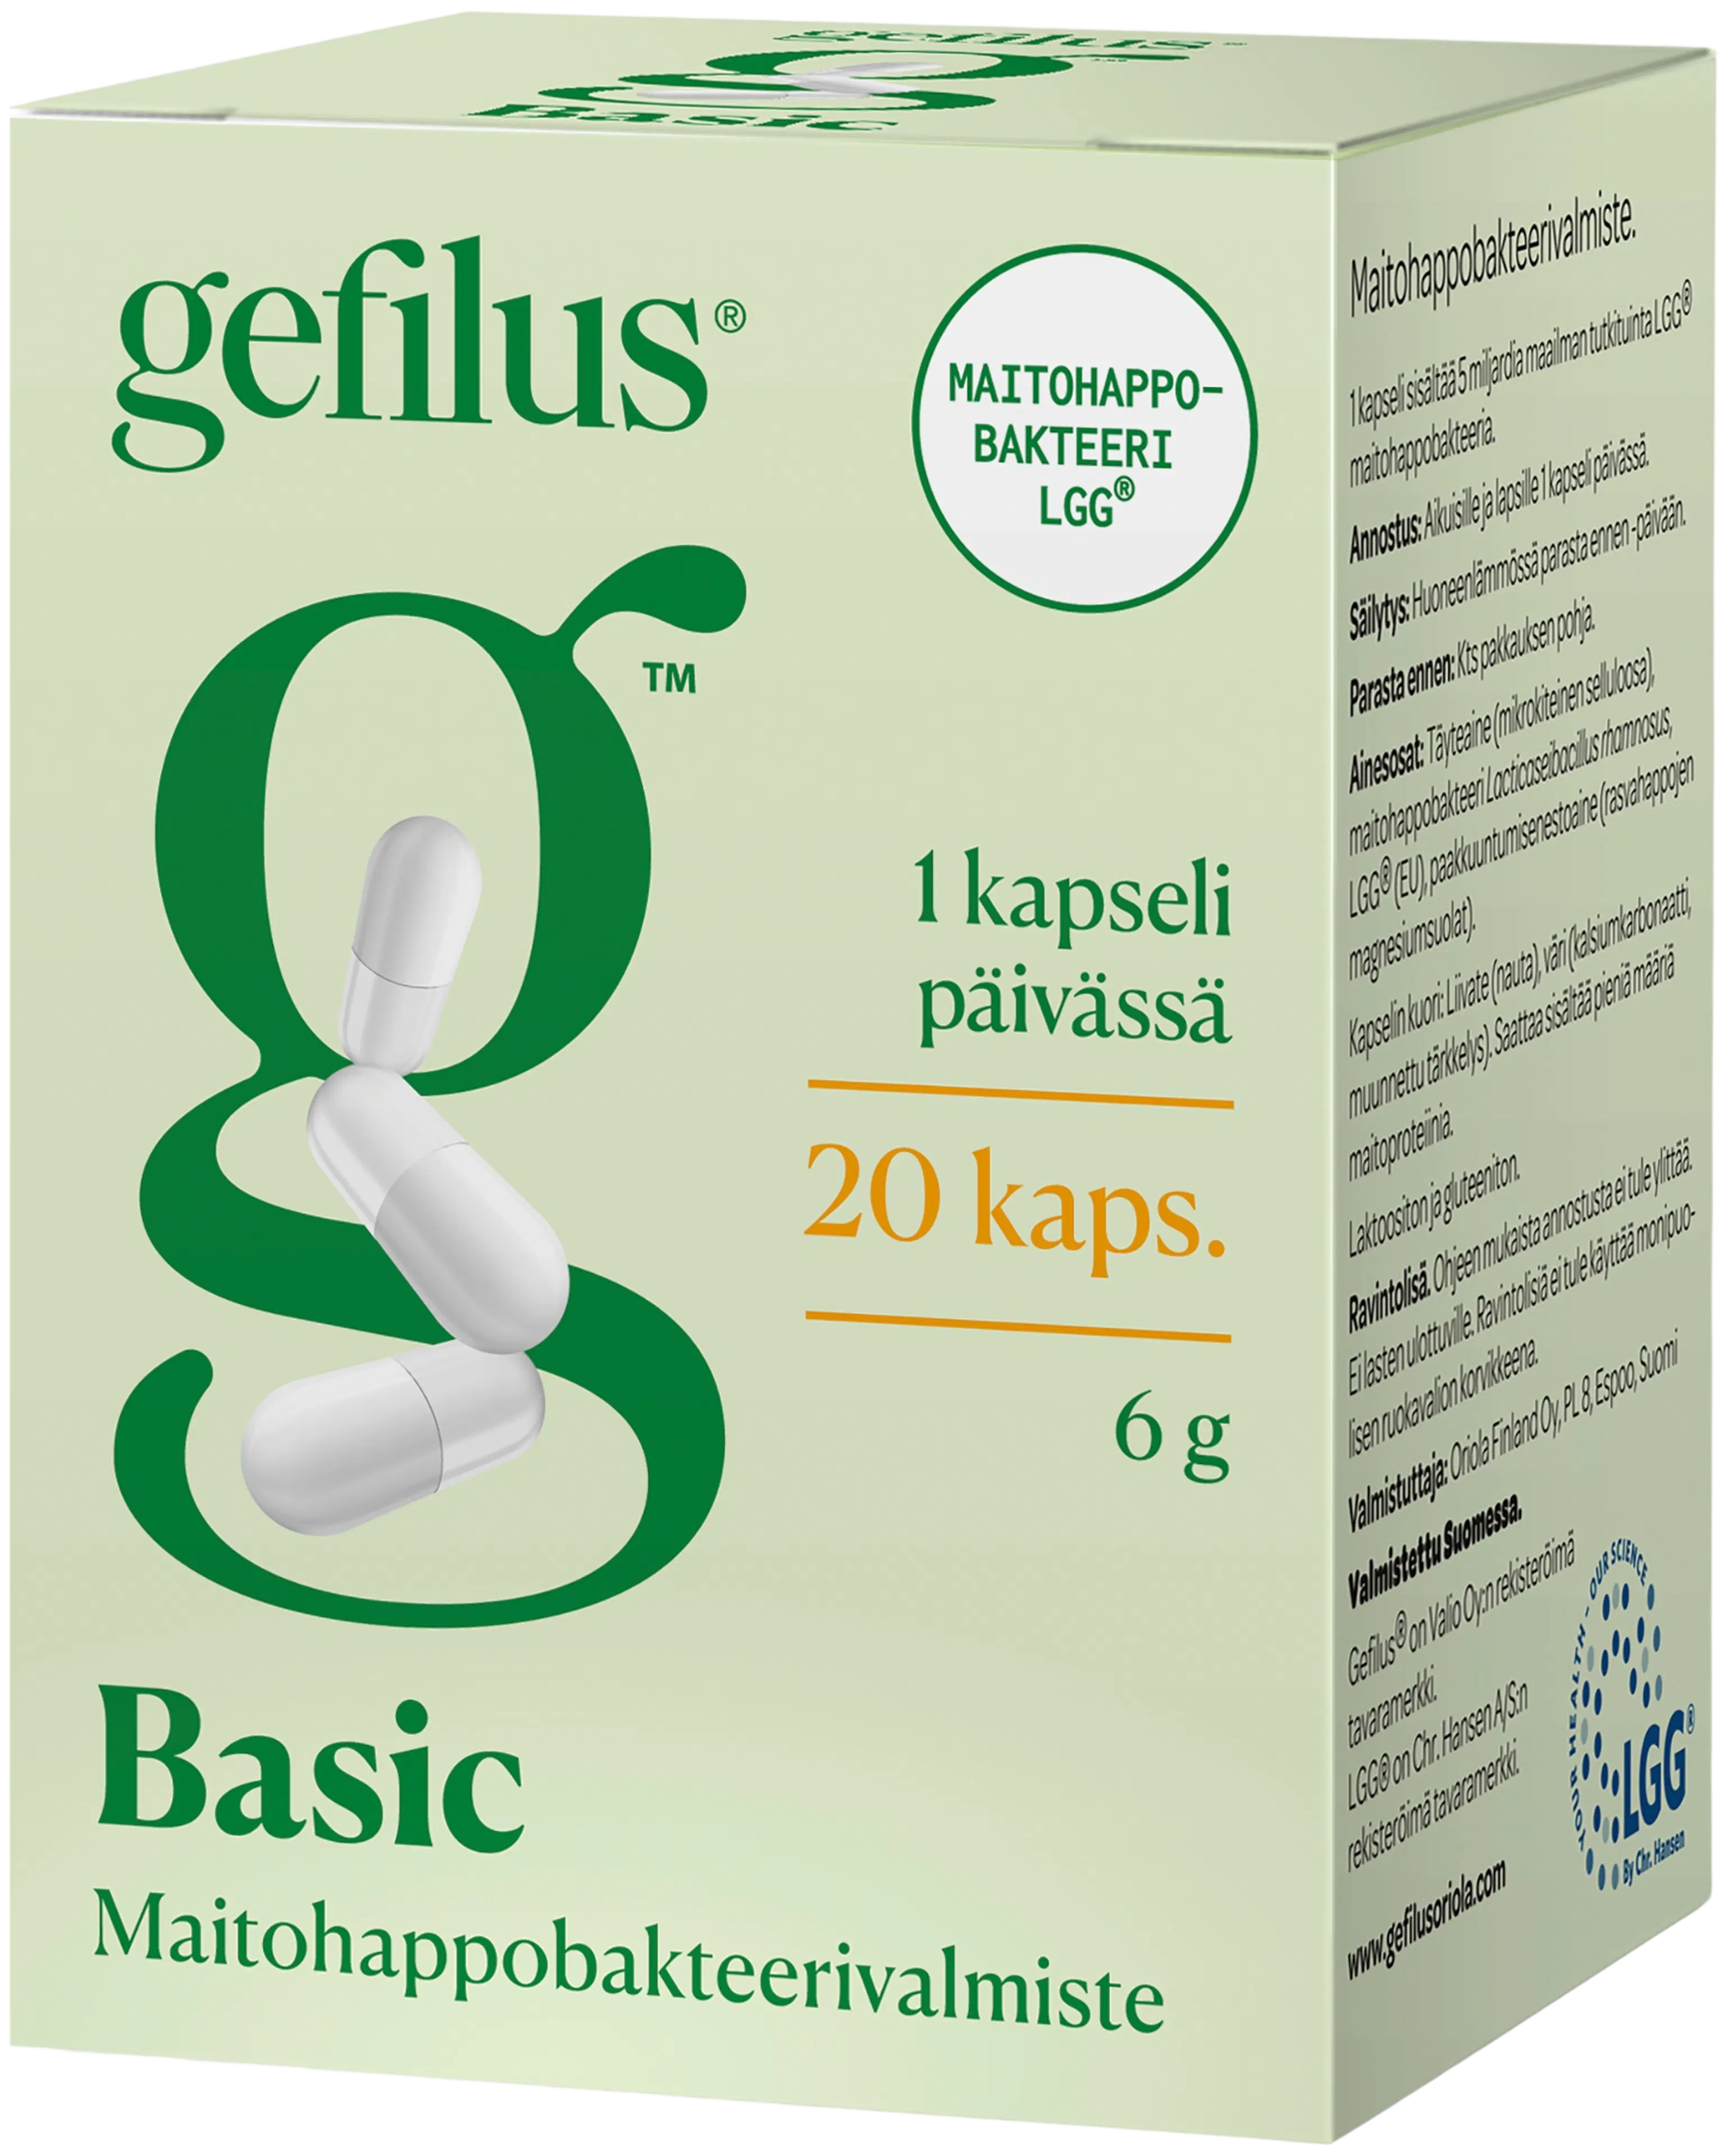 Gefilus Basic kapseli maitohappobakteerivalmiste 20kaps 7g ravintolisä